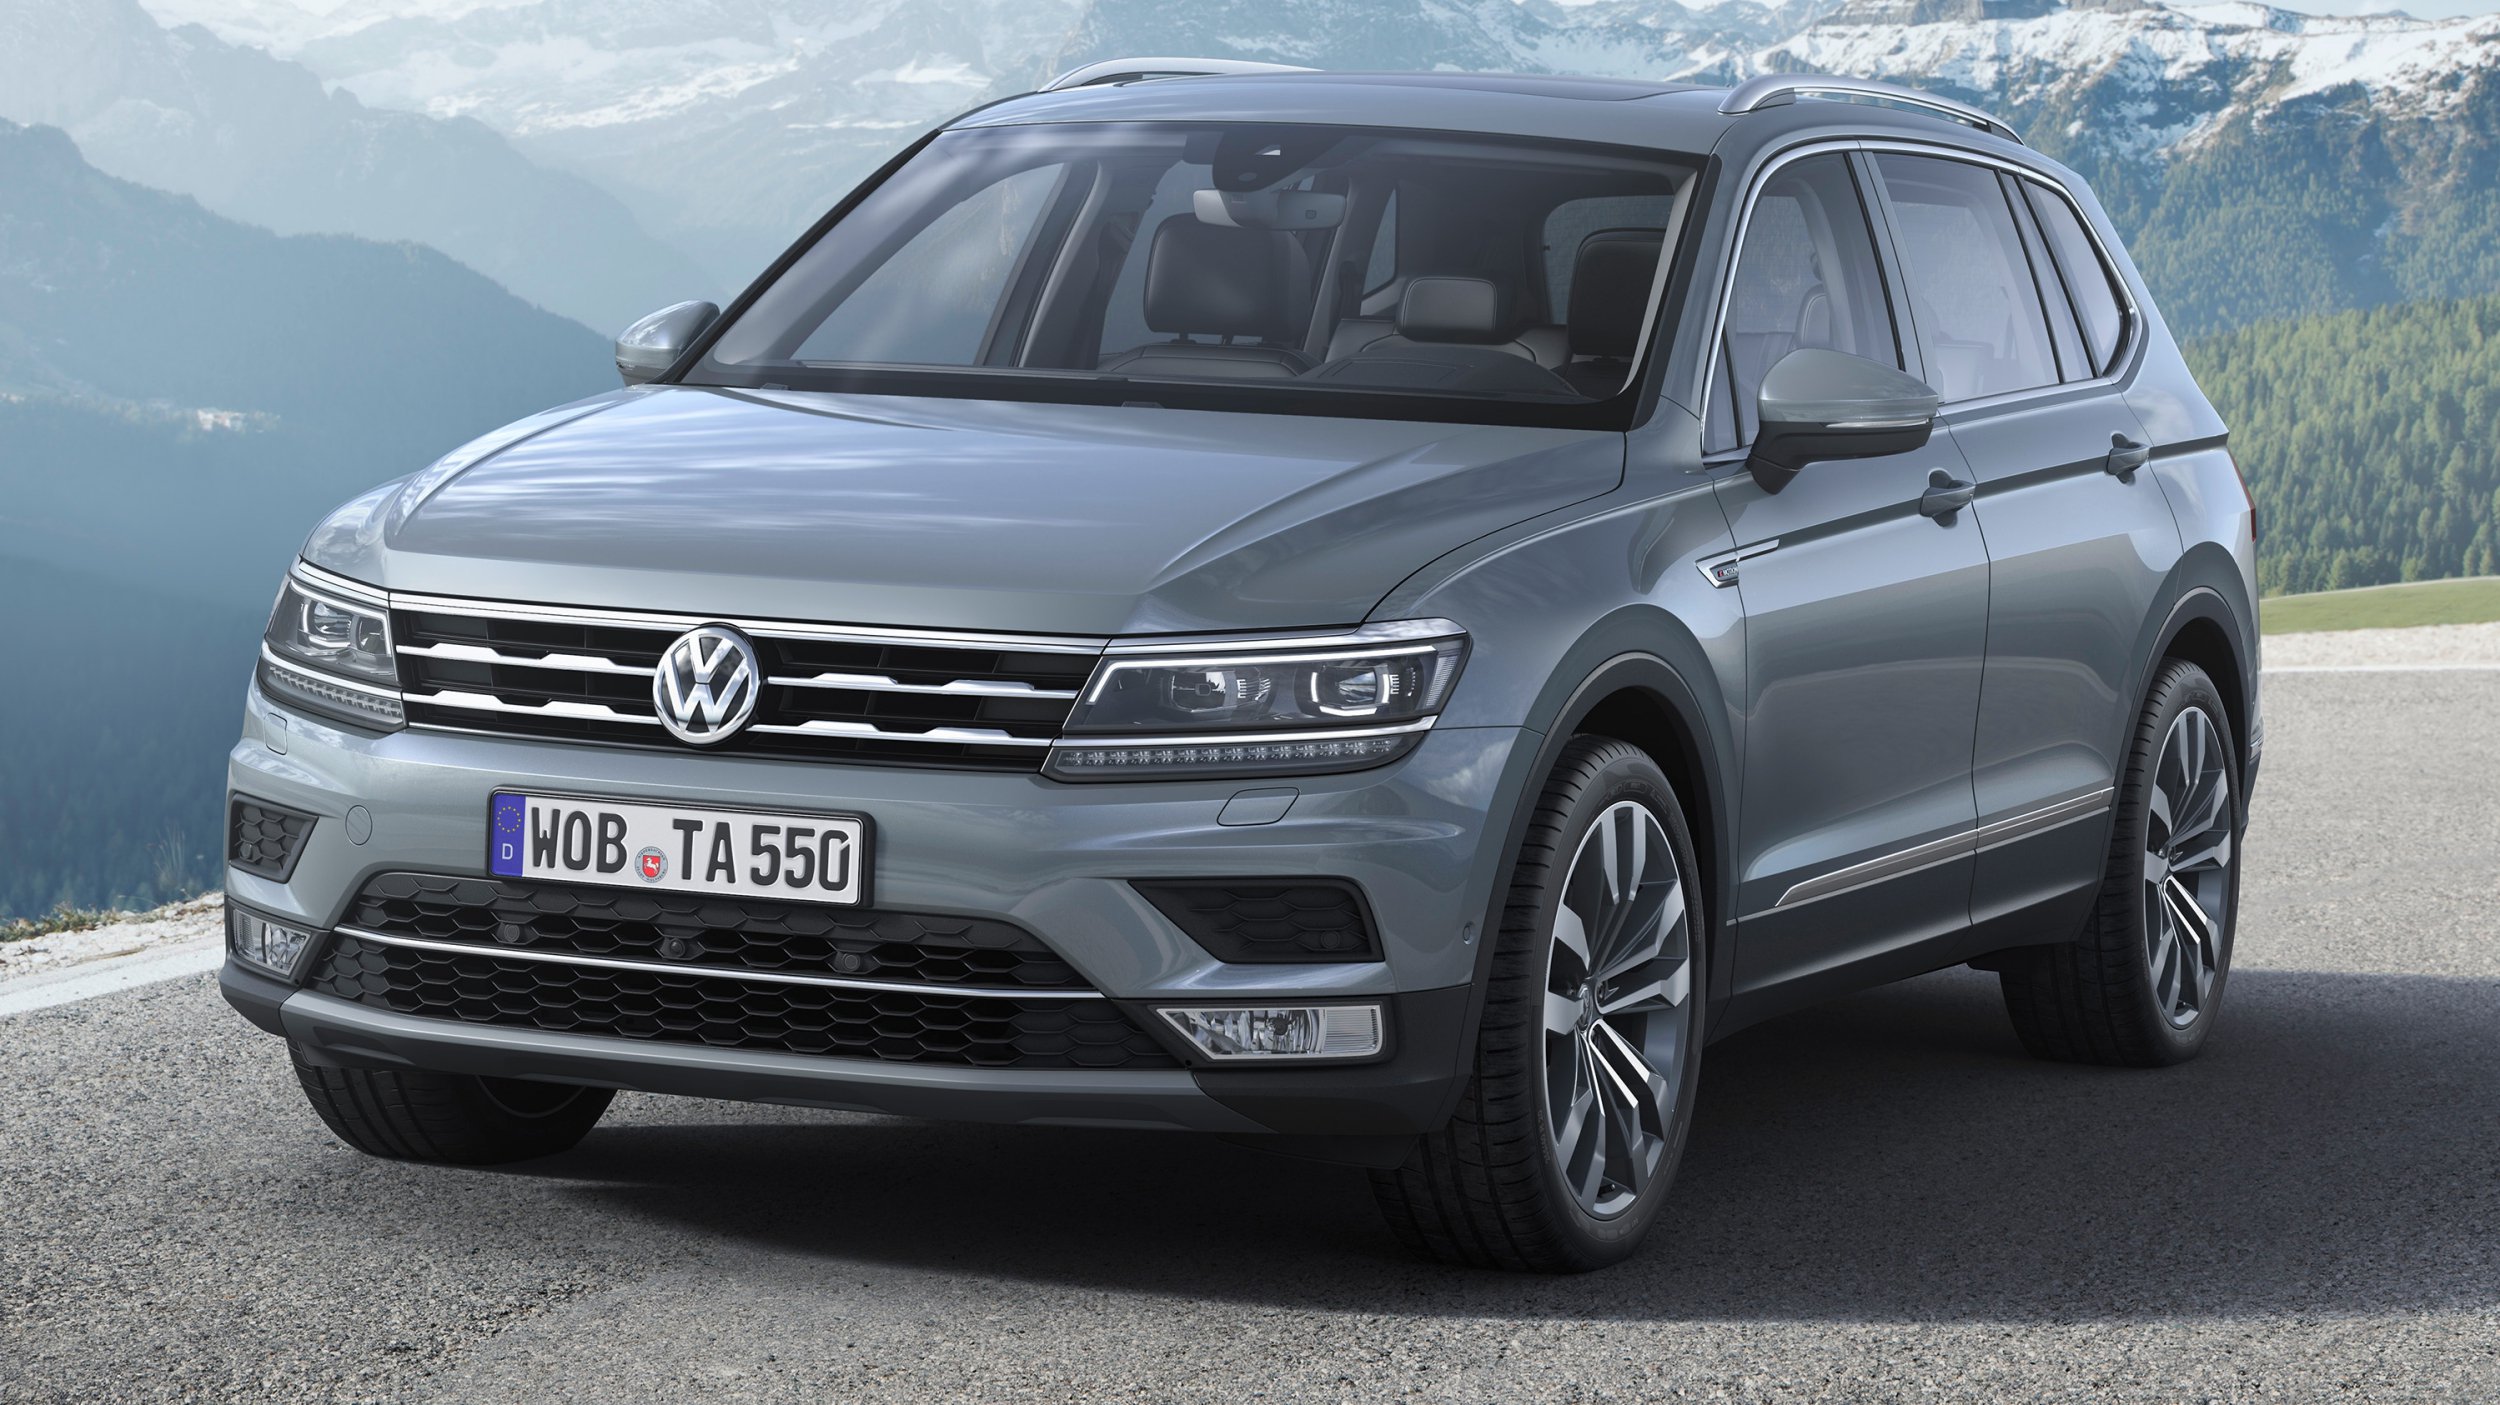 News - '18 Volkswagen Tiguan Allspace Details Drop